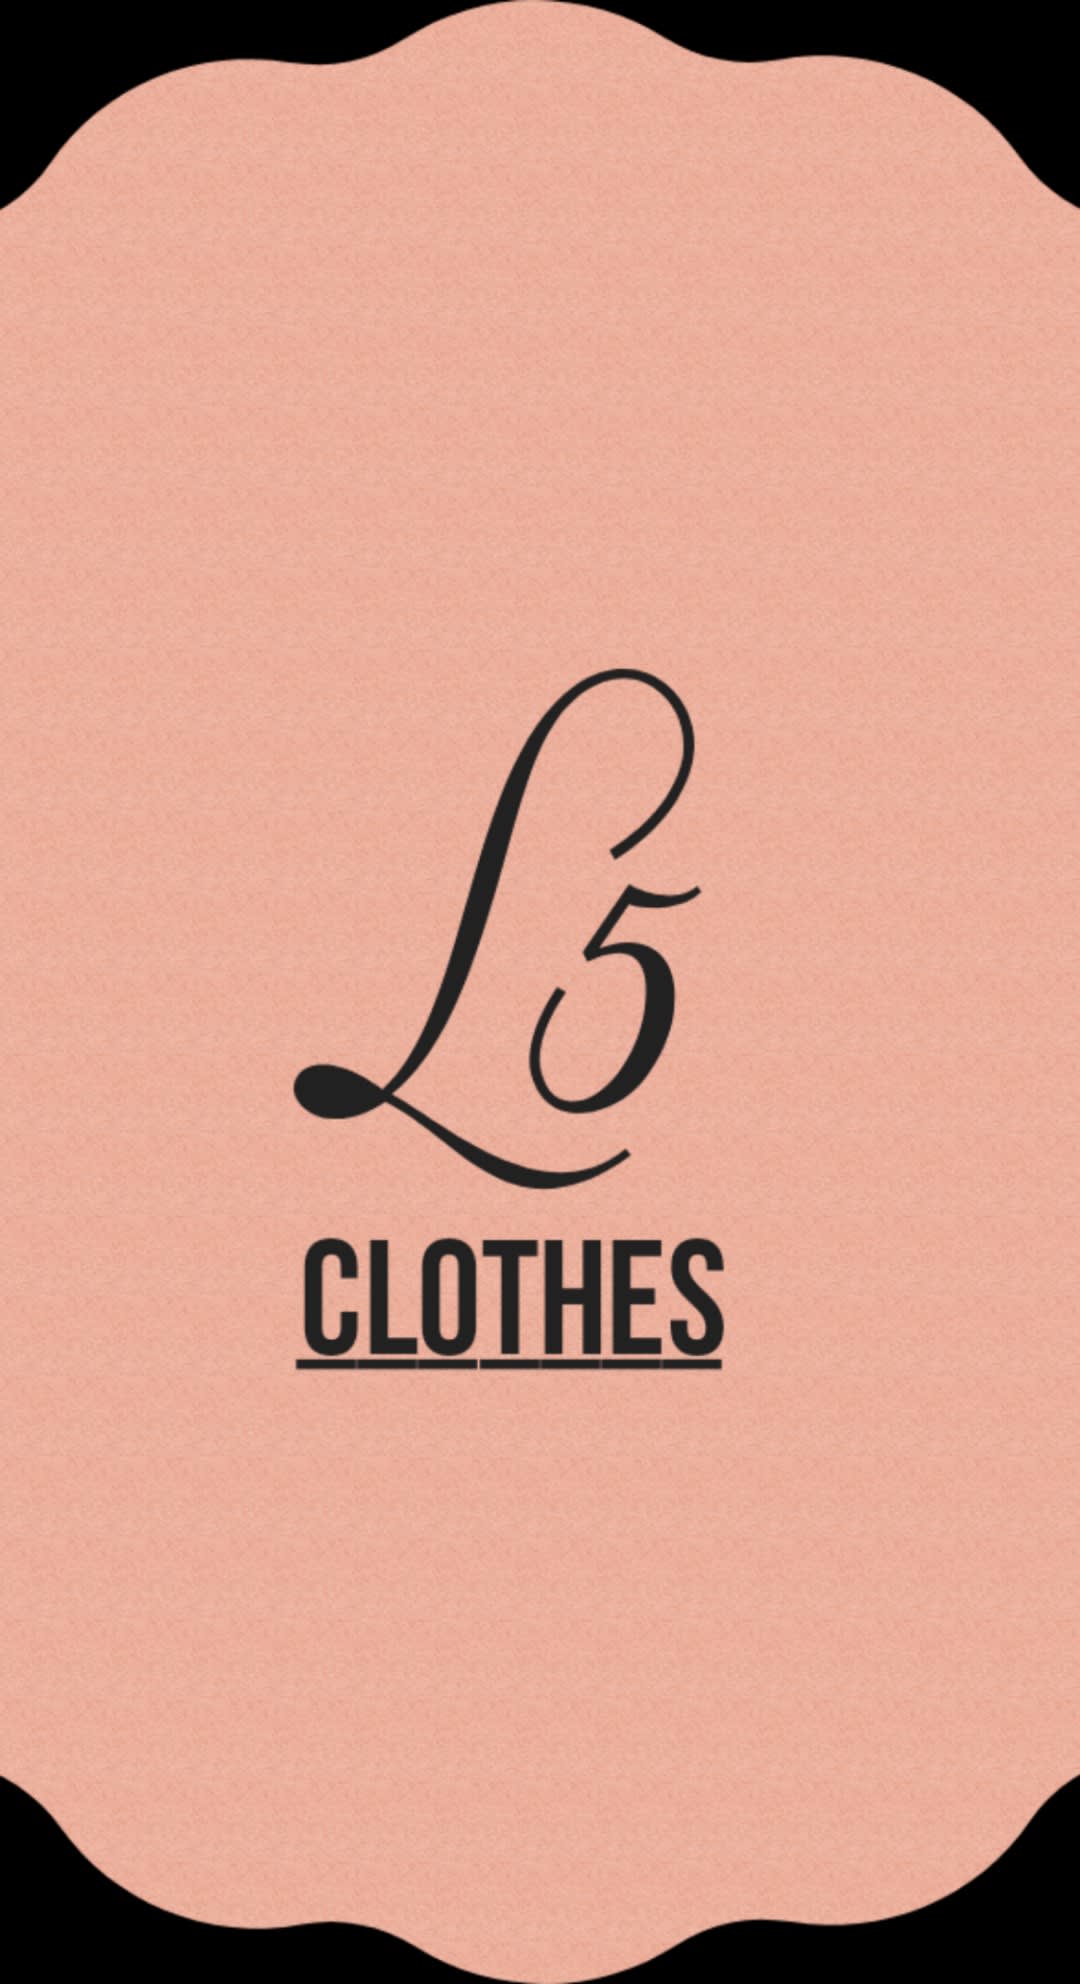 L5 Clothes